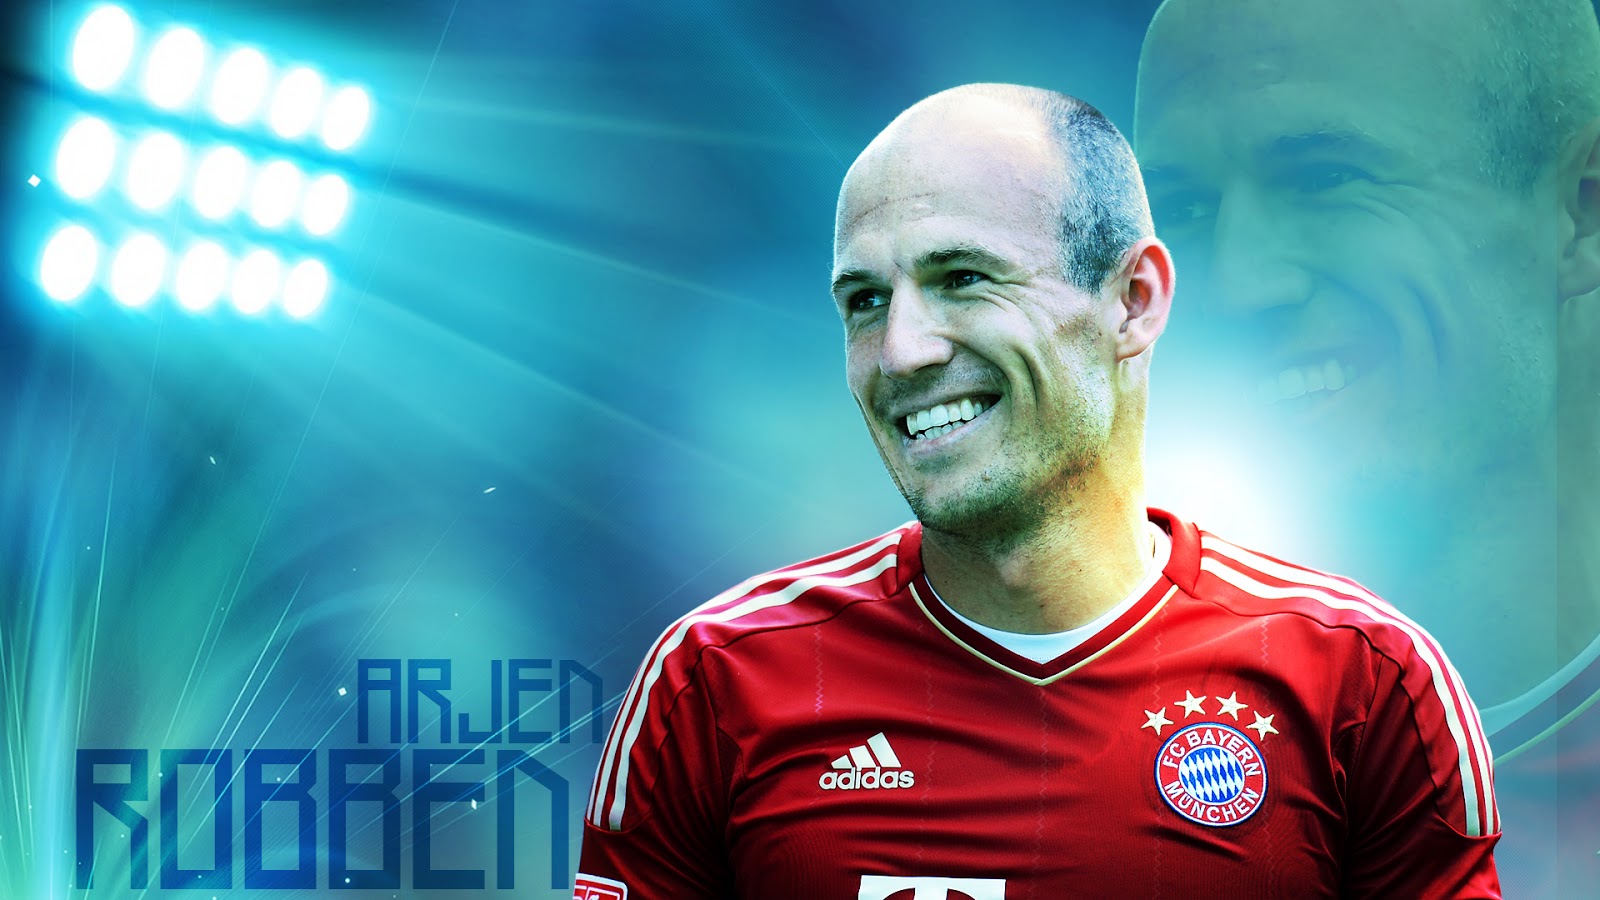 Bayern Munich Arjen Robben Wallpaper - Arjen Robben , HD Wallpaper & Backgrounds